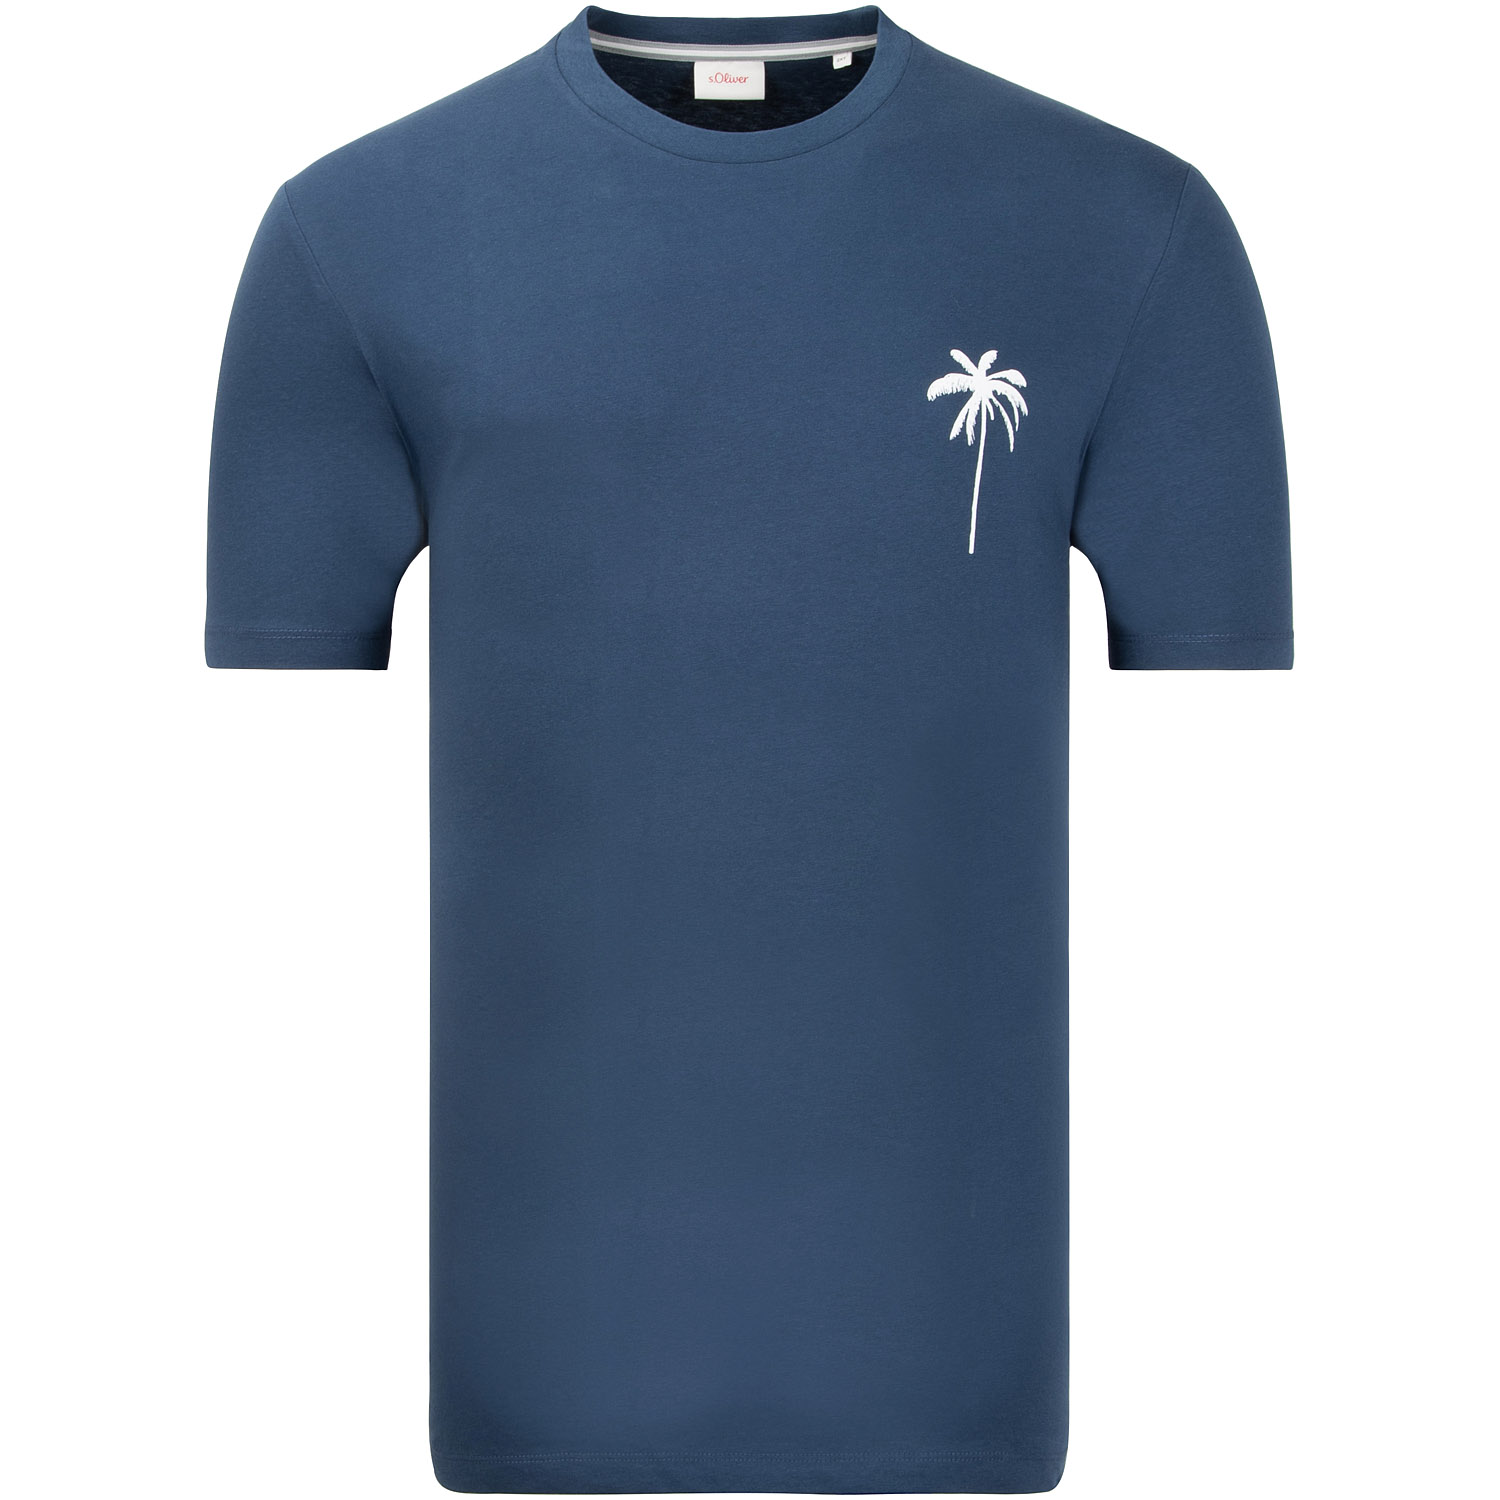 S.OLIVER T-Shirt - EXTRA lang blau Herrenmode in Übergrößen kaufen